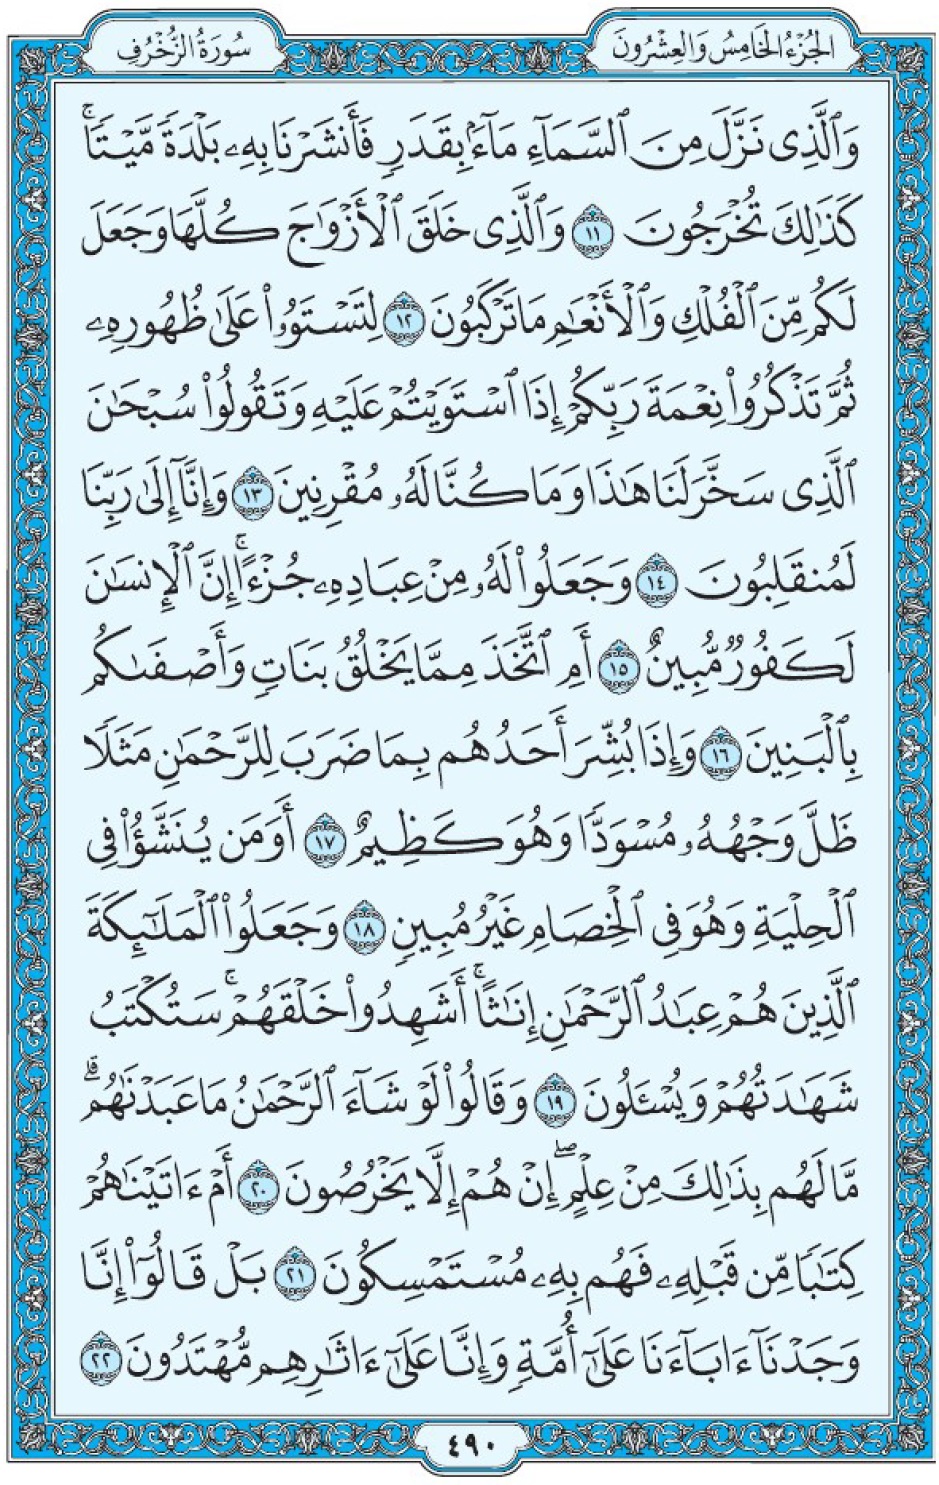 Коран Мединский мусхаф страница 490, Аз-Зухруф, аят 11-22